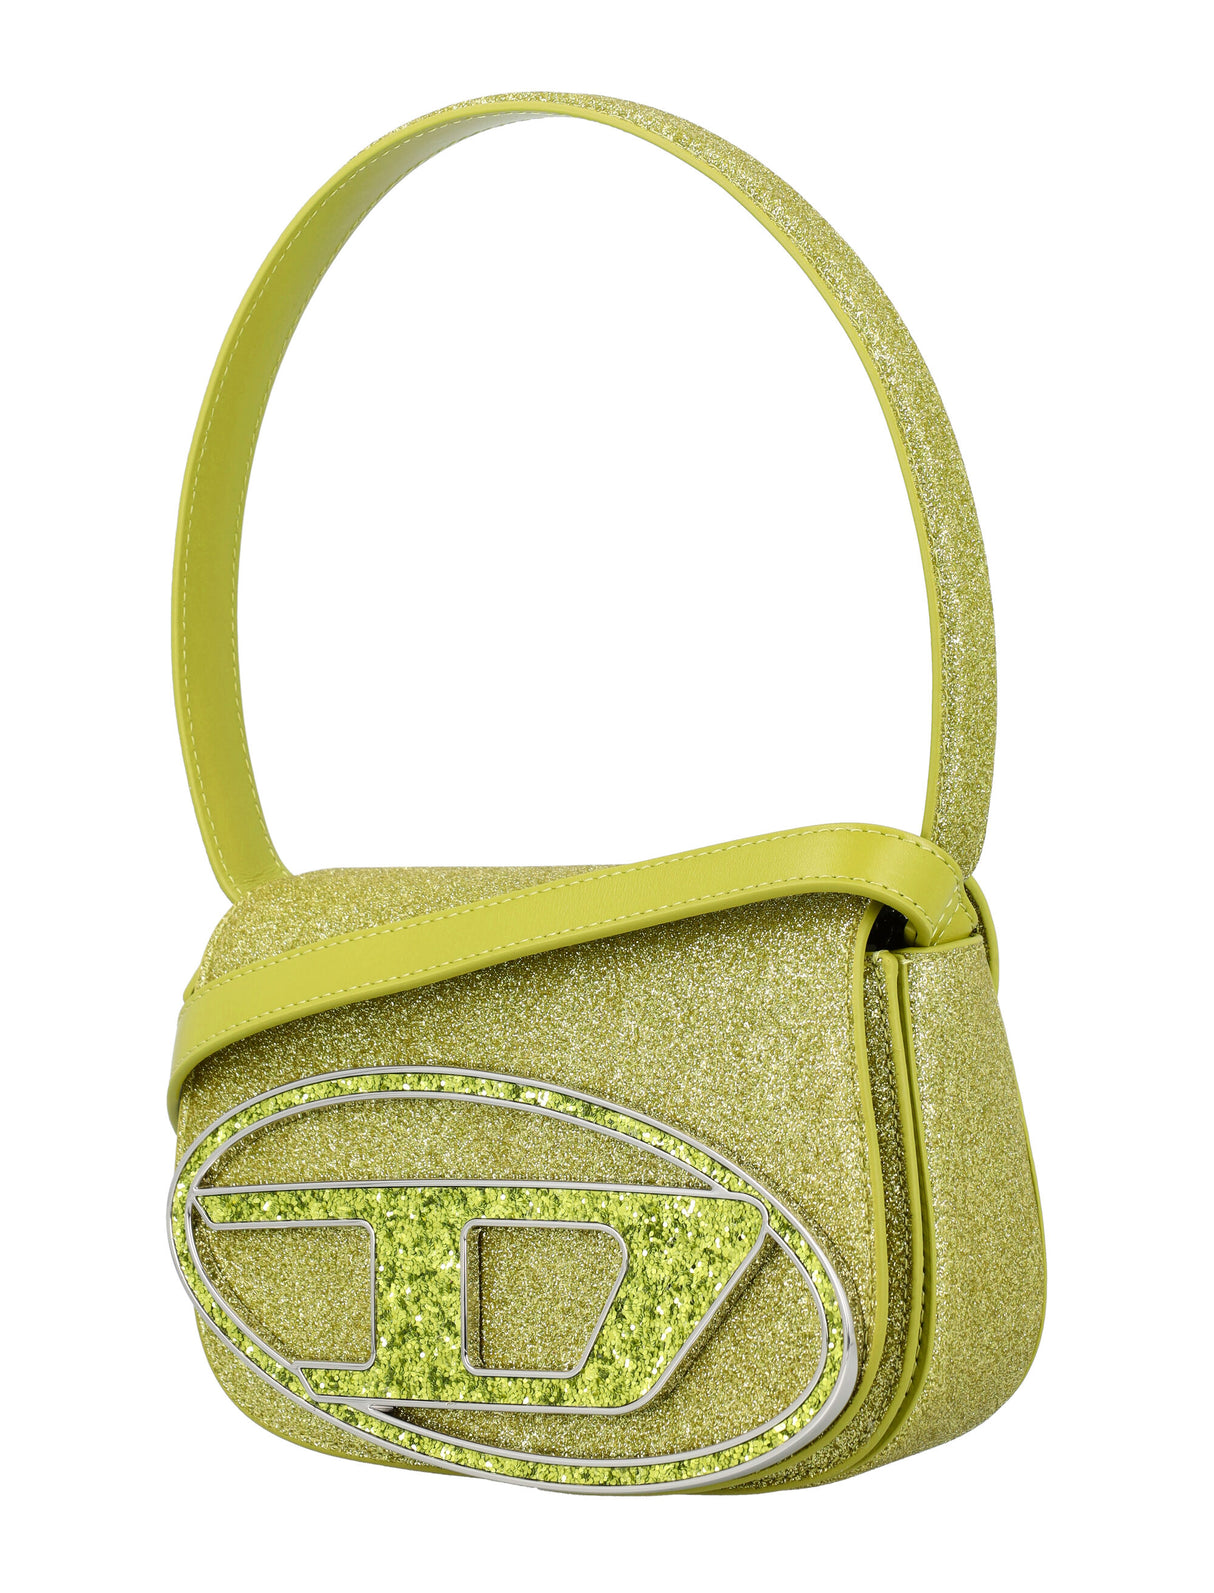 DIESEL Yellow Glitter Shoulder Handbag for Women